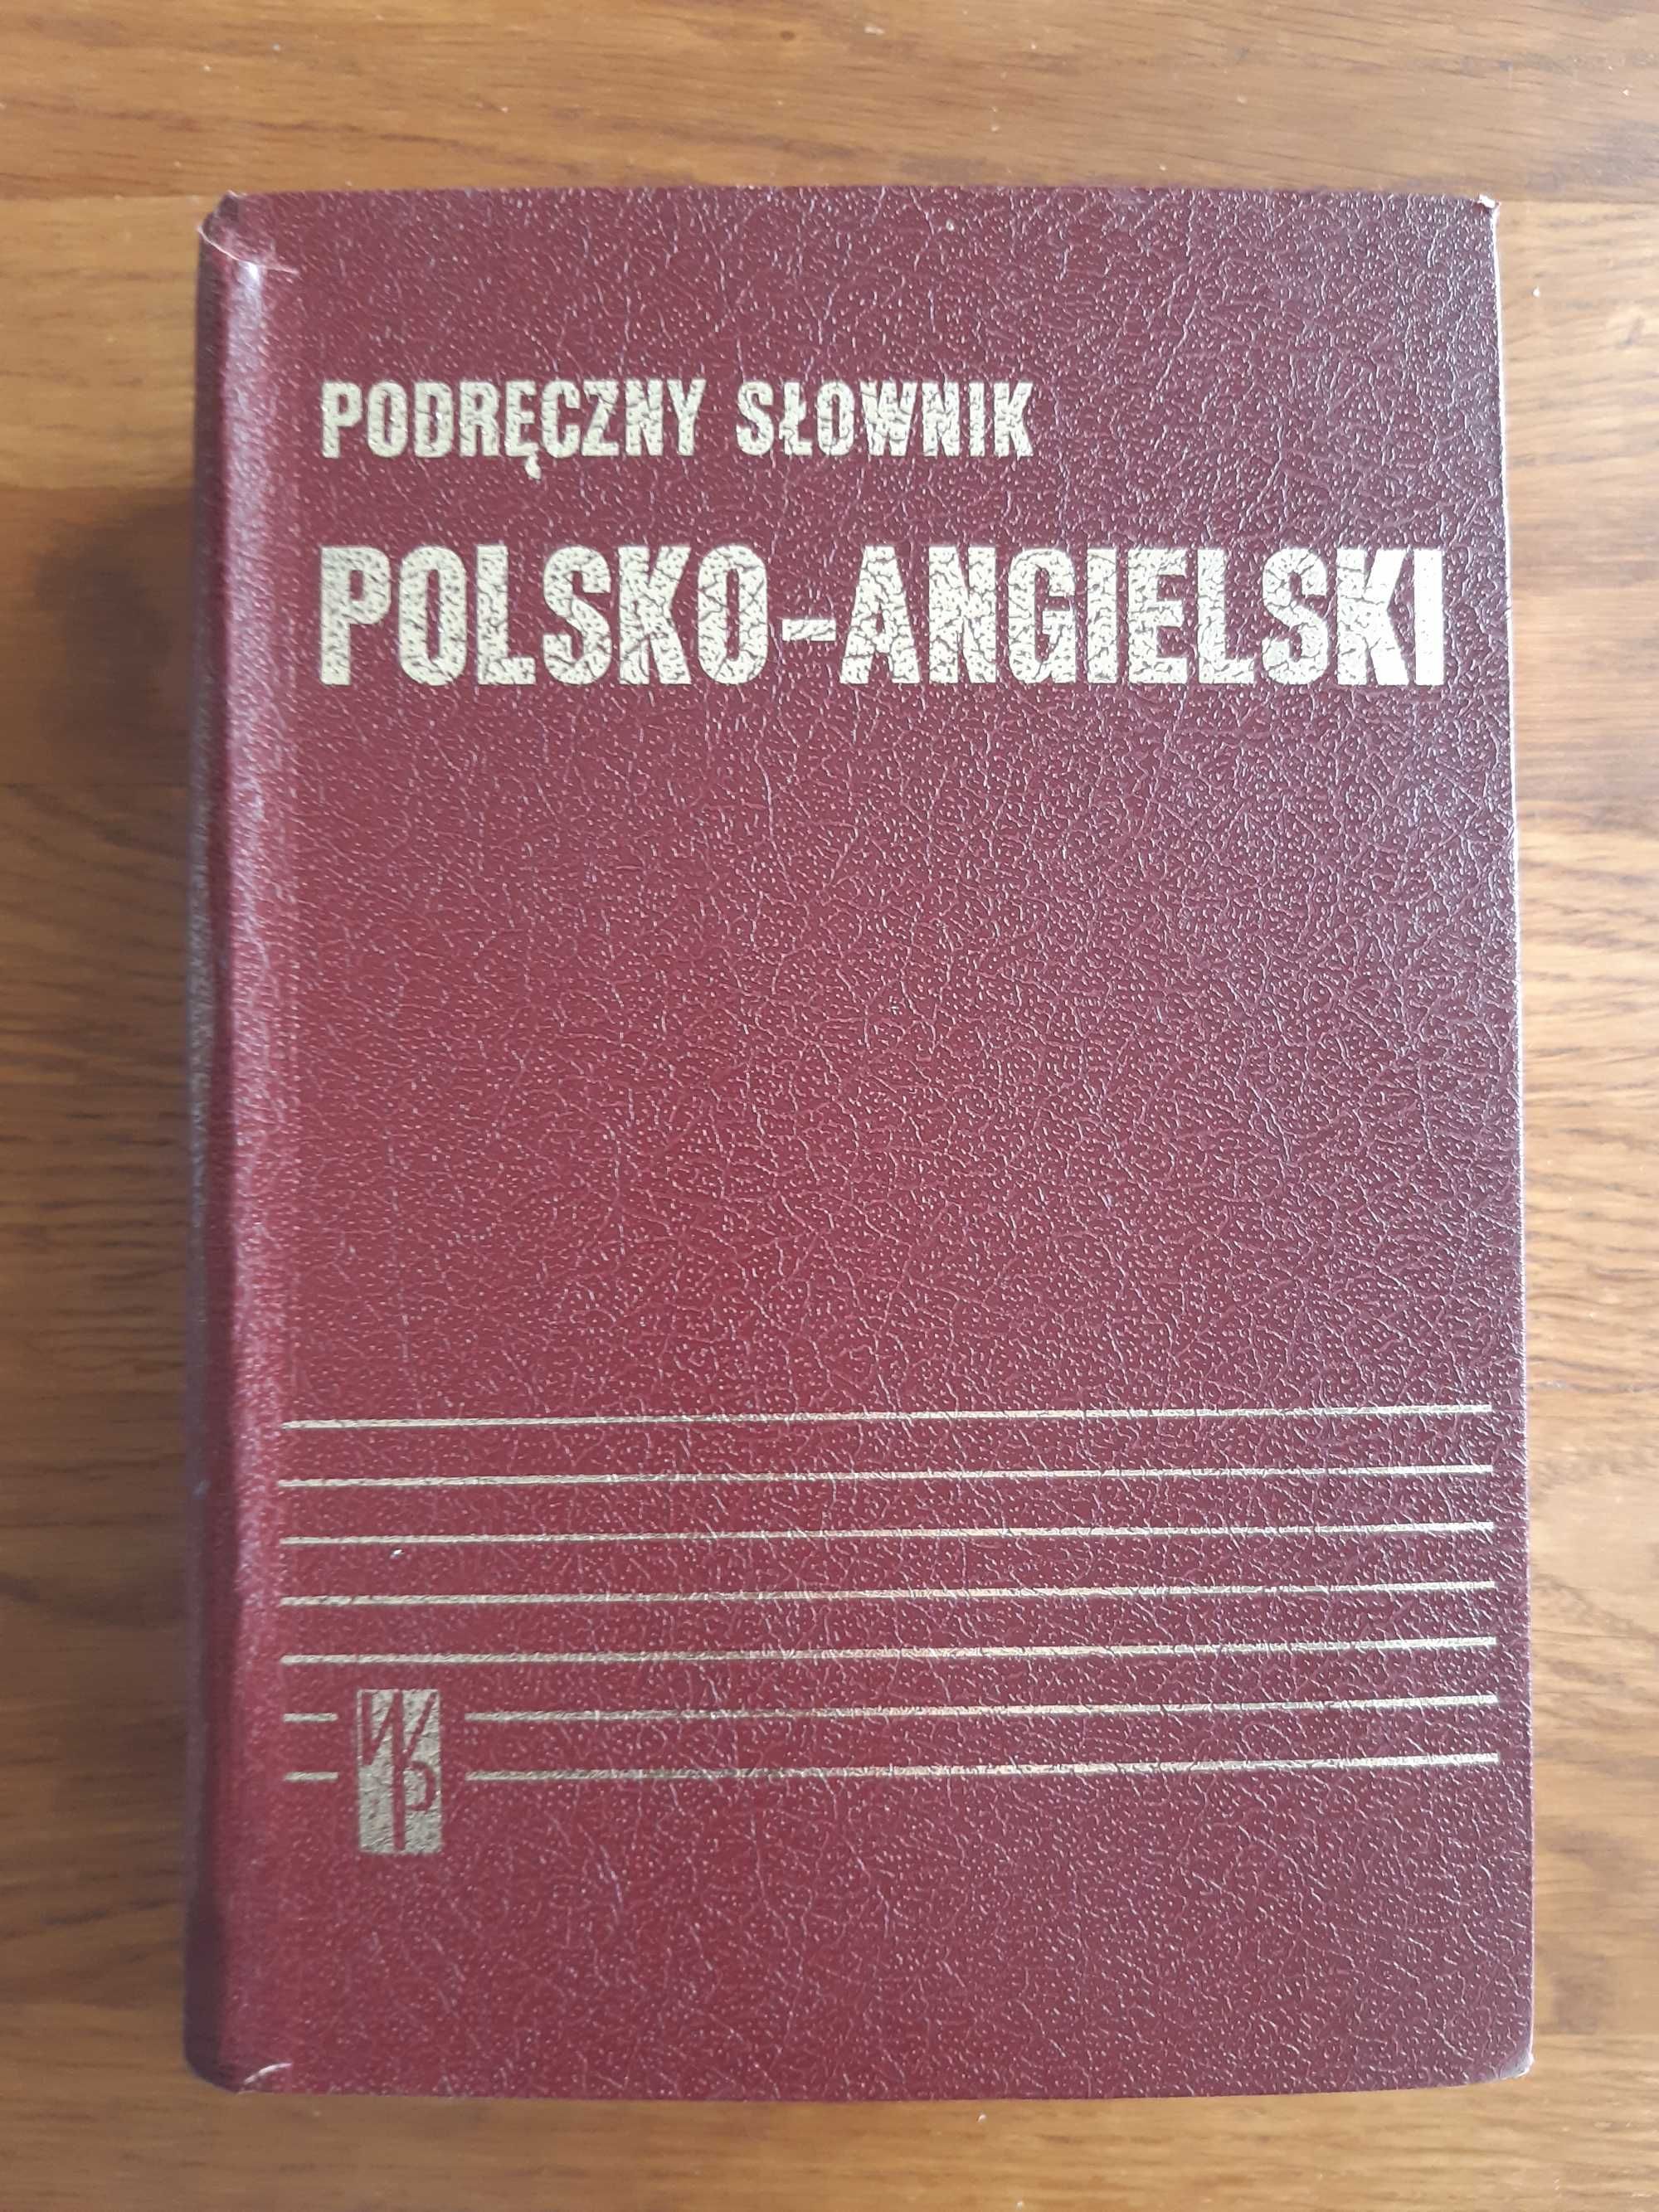 Podręczny słownik polsko-angielski. J. Stanisławki, M. Szercha